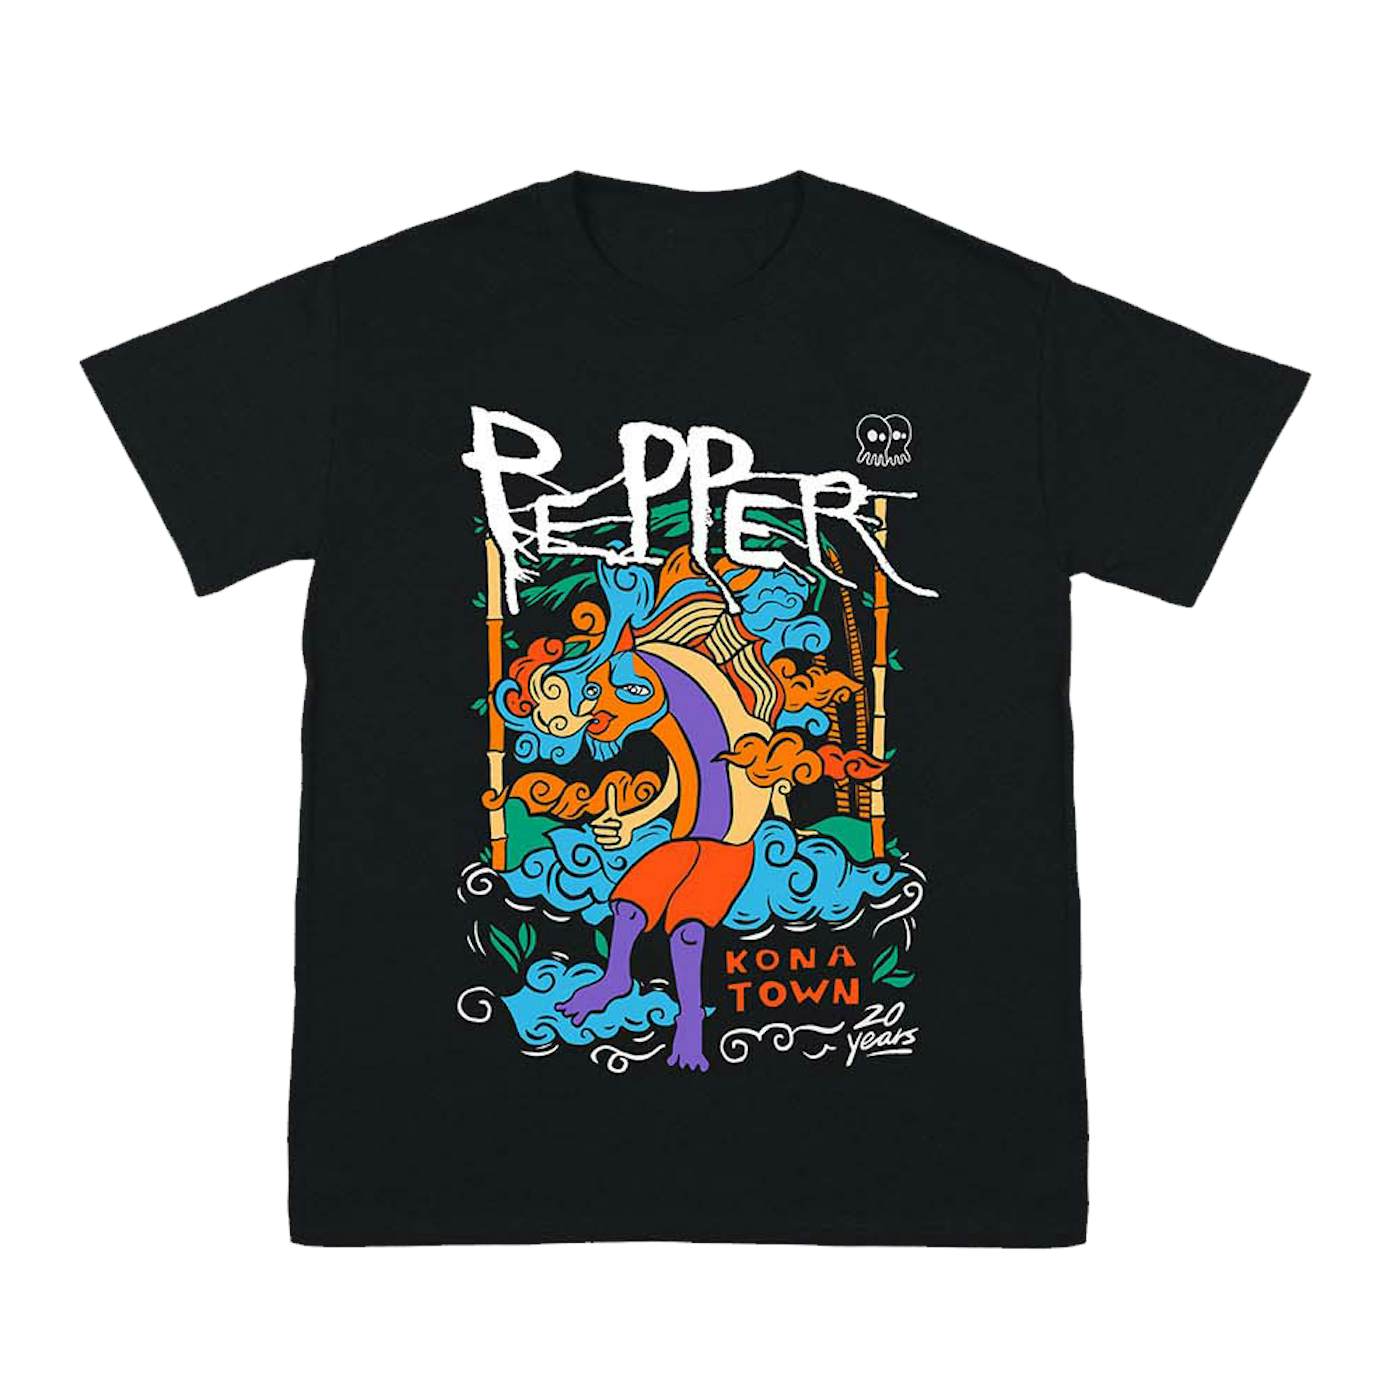 Pepper Konatown 20 Year Anniversary Tour Tee